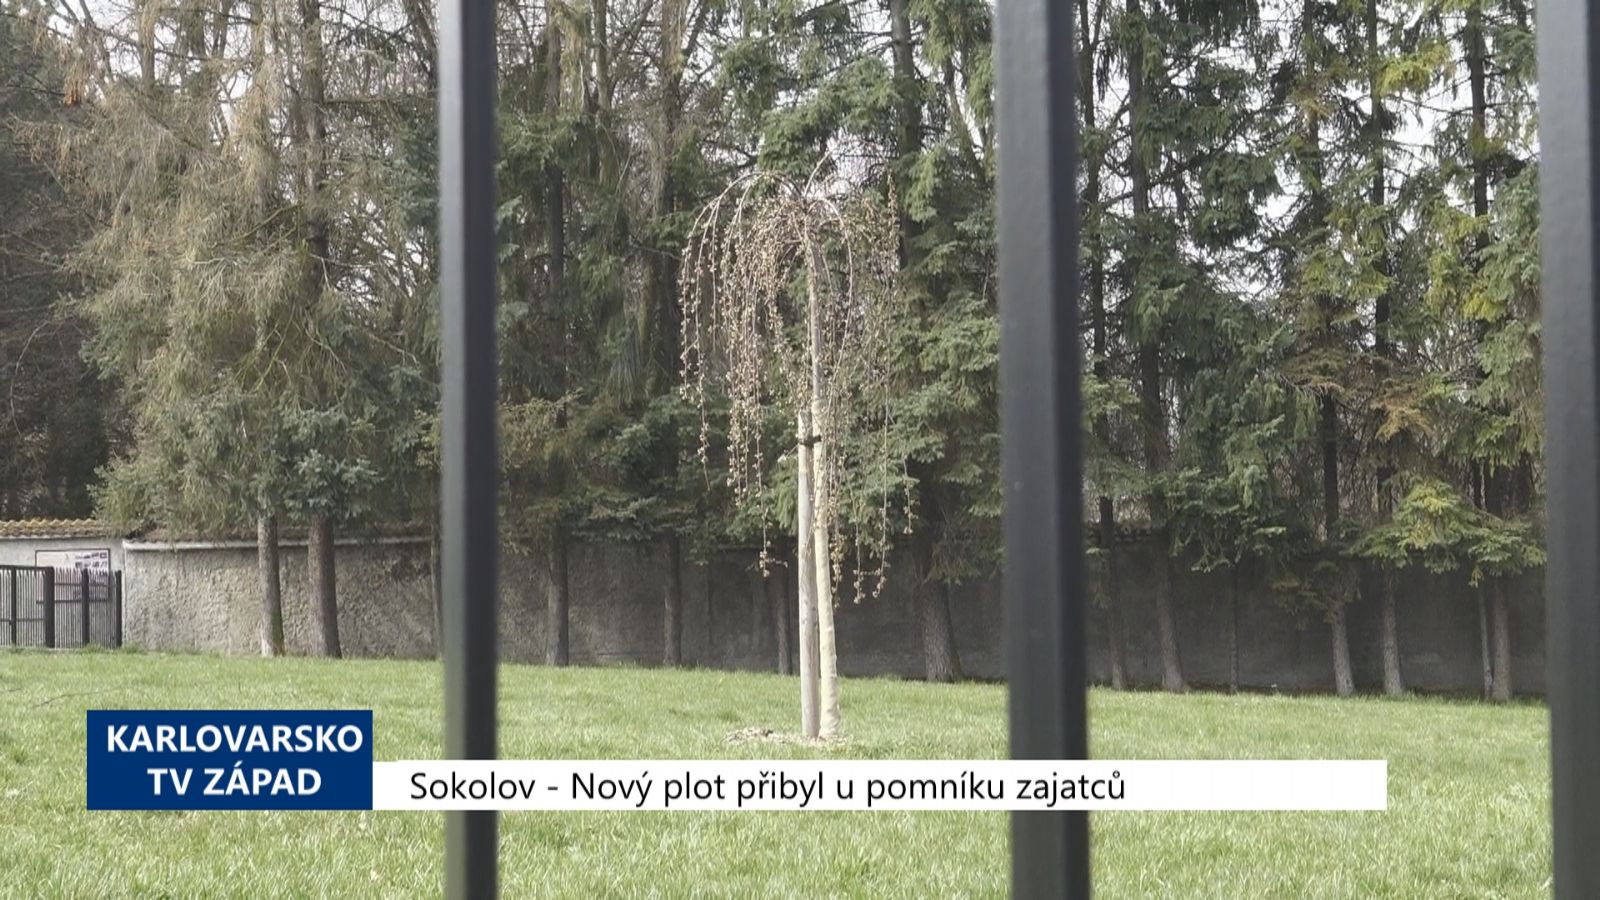 Sokolov: Nový plot přibyl u pomníku zajatců (TV Západ)